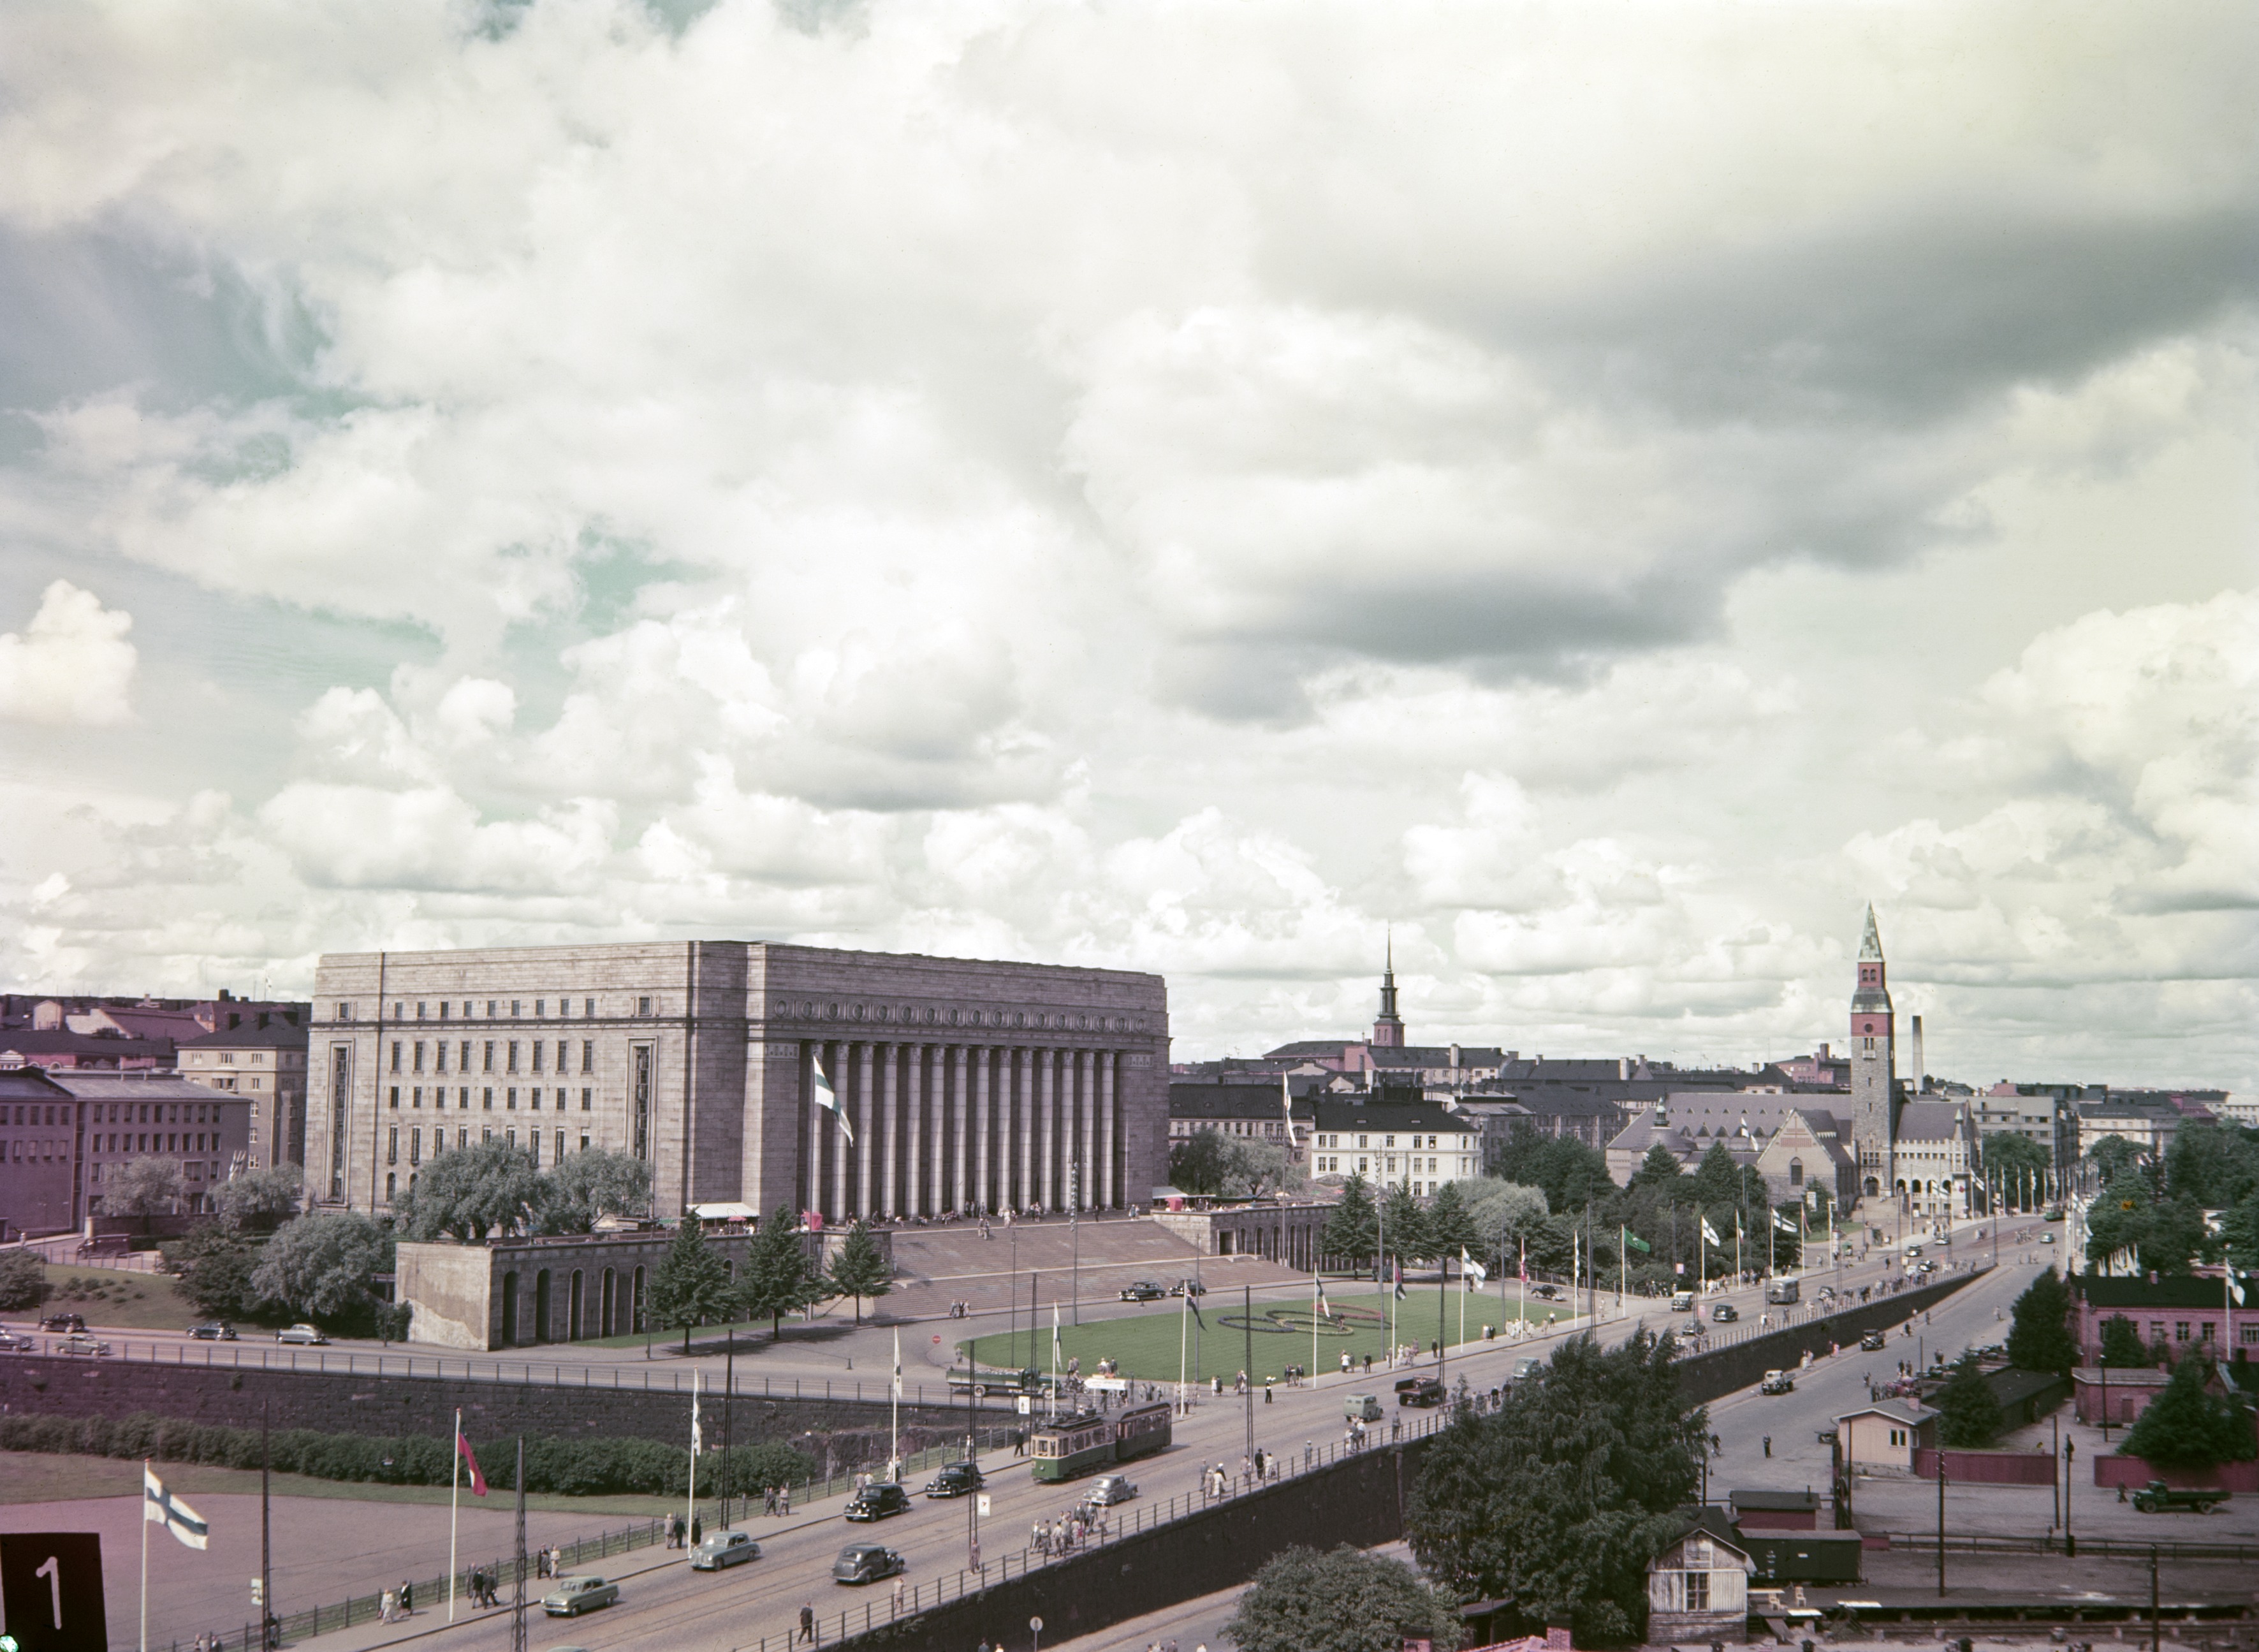 Helsingin olympialaiset 1952. Näkymä Mannerheimintielle Postitalon katolta. Juhlaliputus Mannerheimintiellä Eduskuntatalon edustalla.